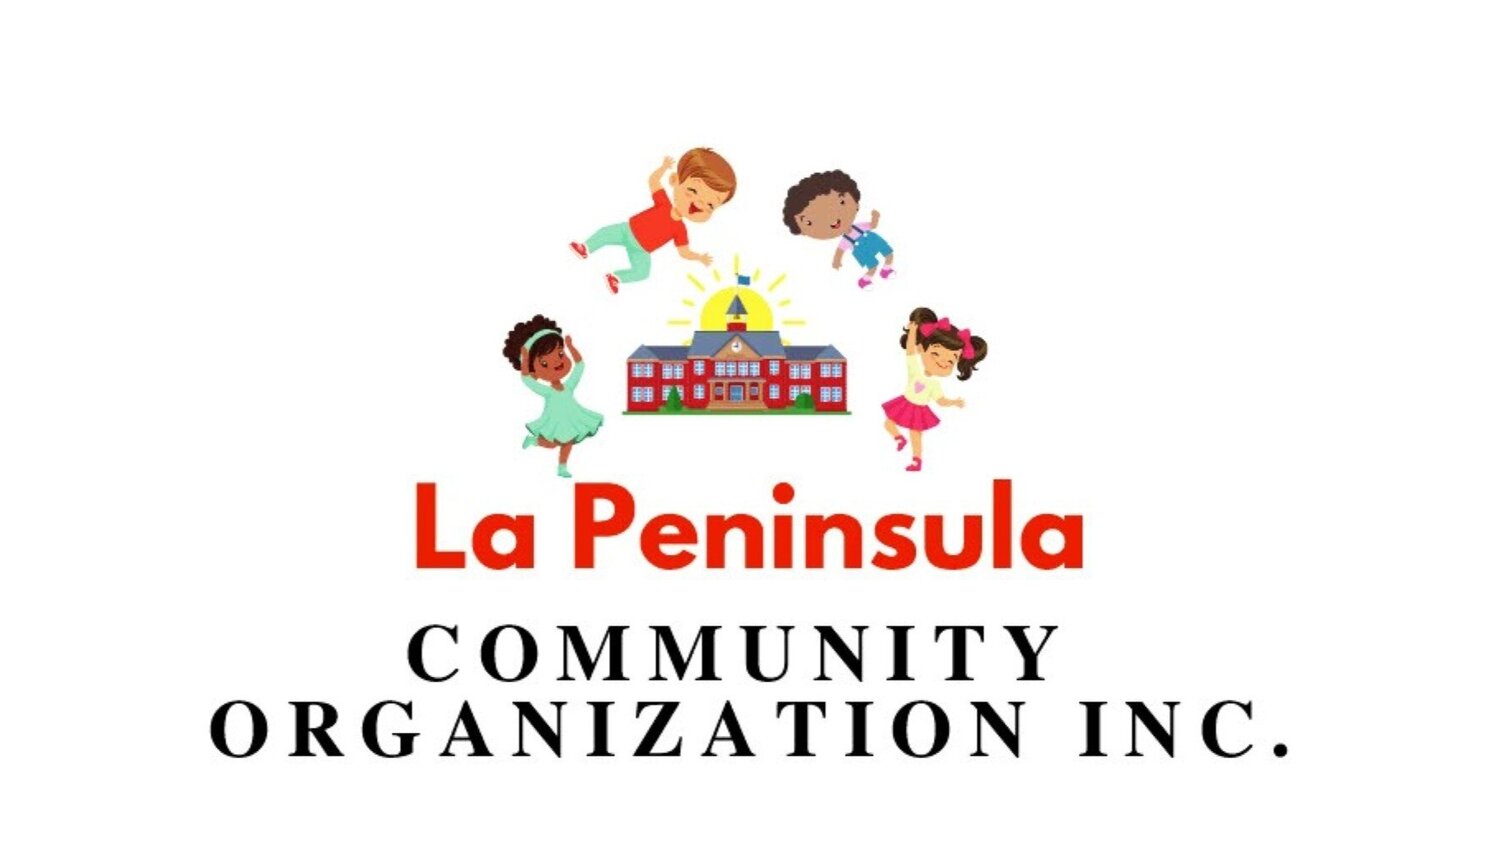 La Peninsula Community Organization